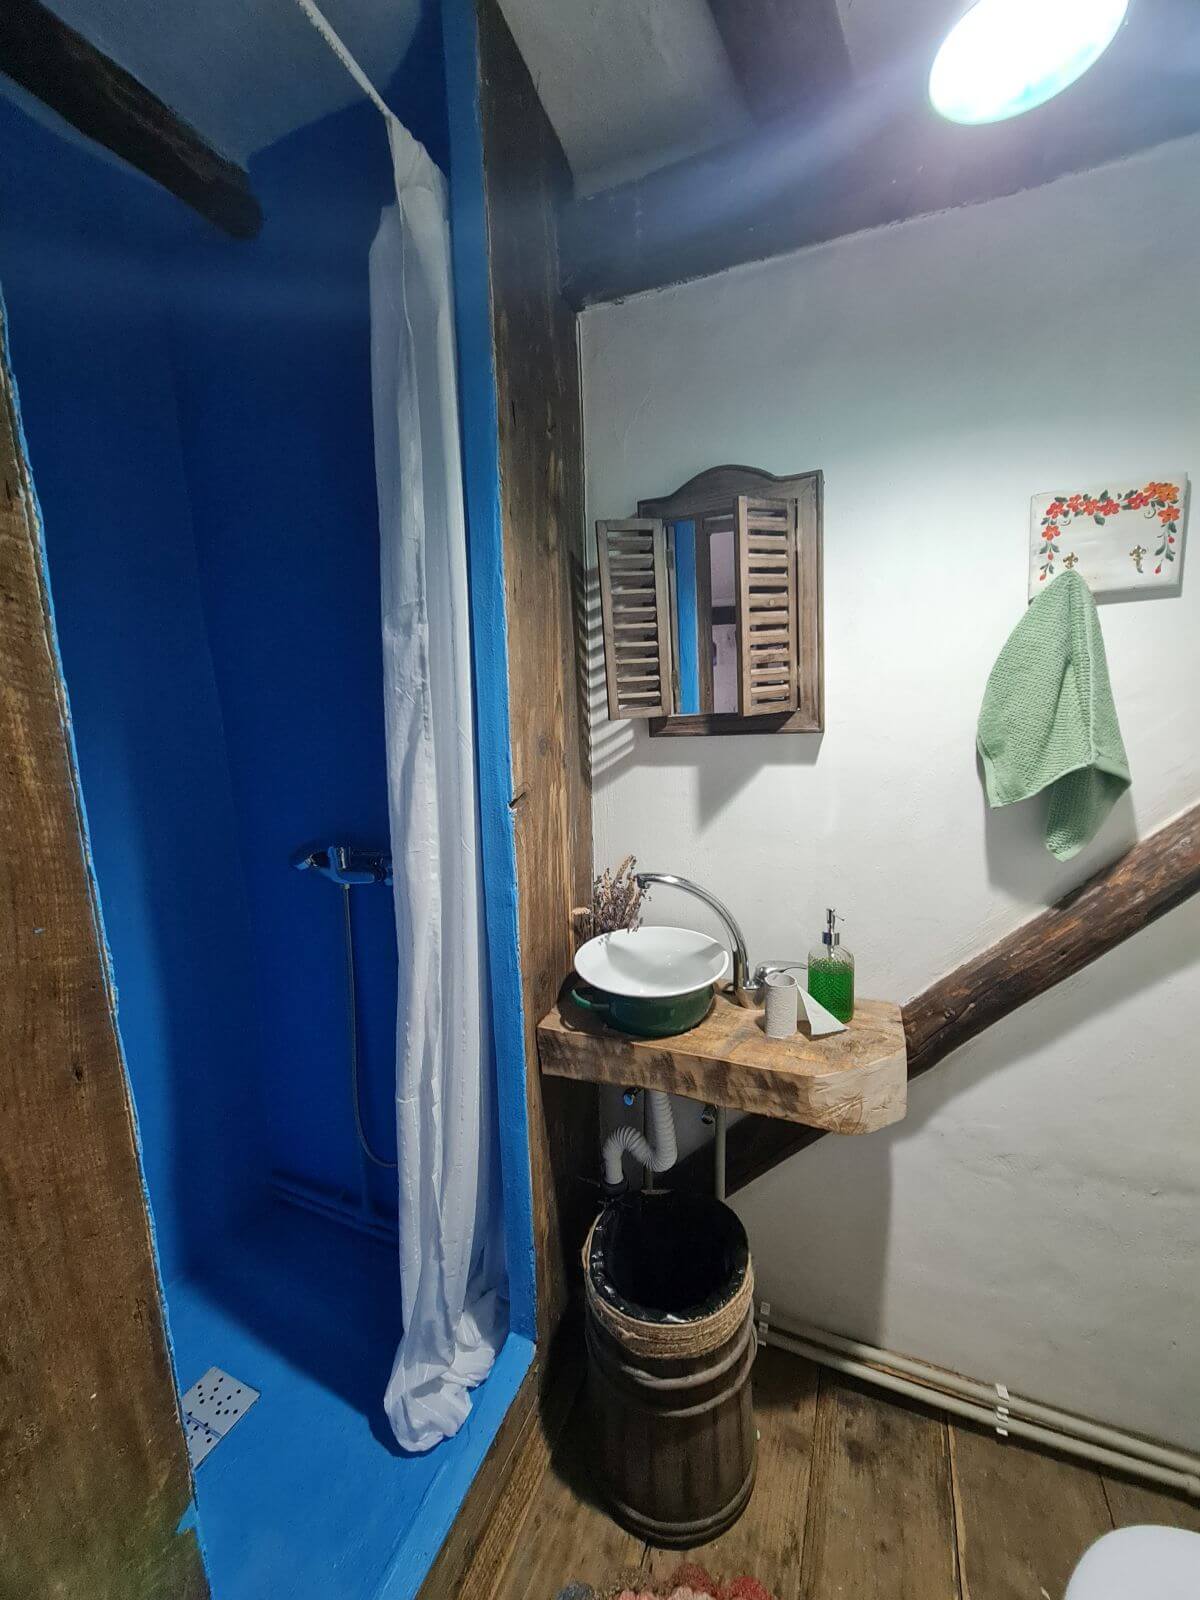 Cabina de duș este o invenție a lui Dînuț Hotea care are o rețetă proprie de tencuială cu rol izolant. Astfel a reușit să facă o cabină perfect hidroizolată fără a folosi faianță. Și au ales nuanța de albastru care se regăsește și la nivelul tâmplăriei căsuței.